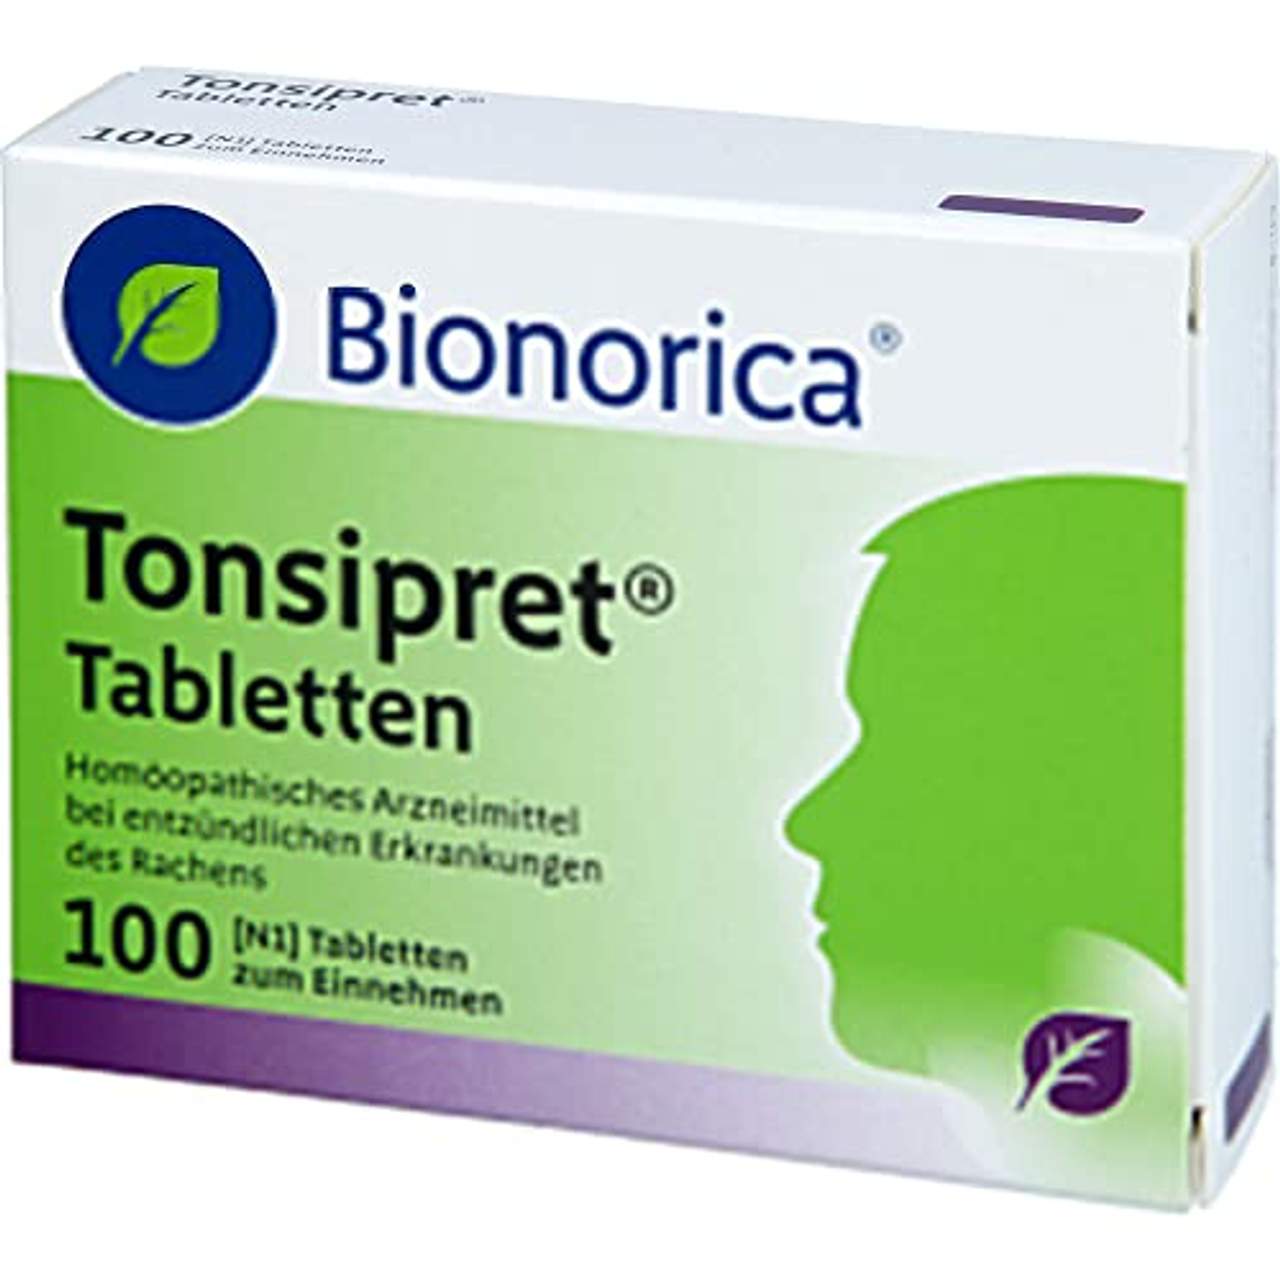 TONSIPRET Tabletten 100 St Tabletten